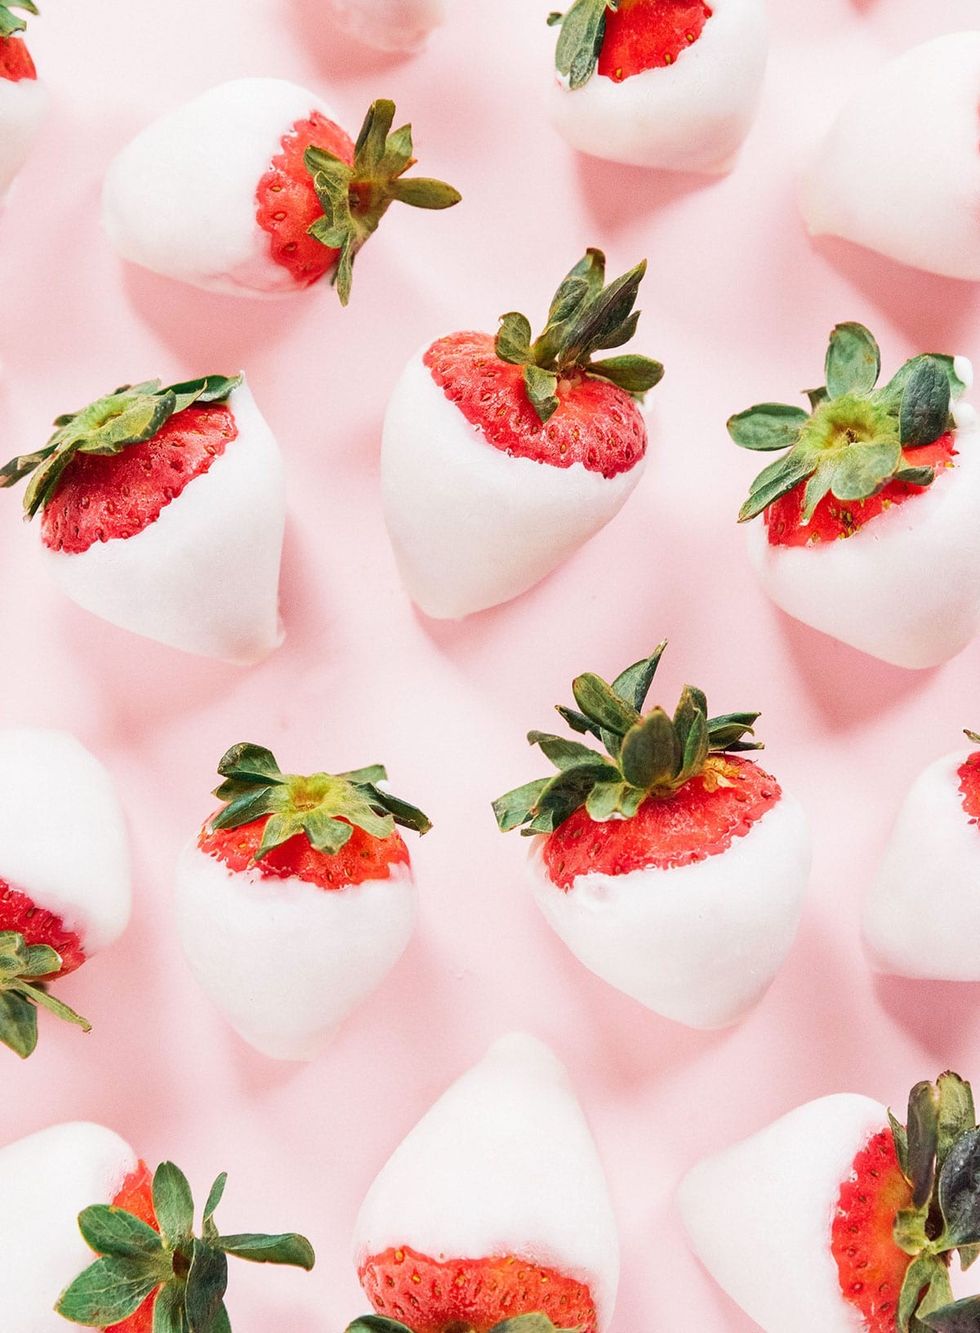 Frozen Yogurt-Covered Strawberries